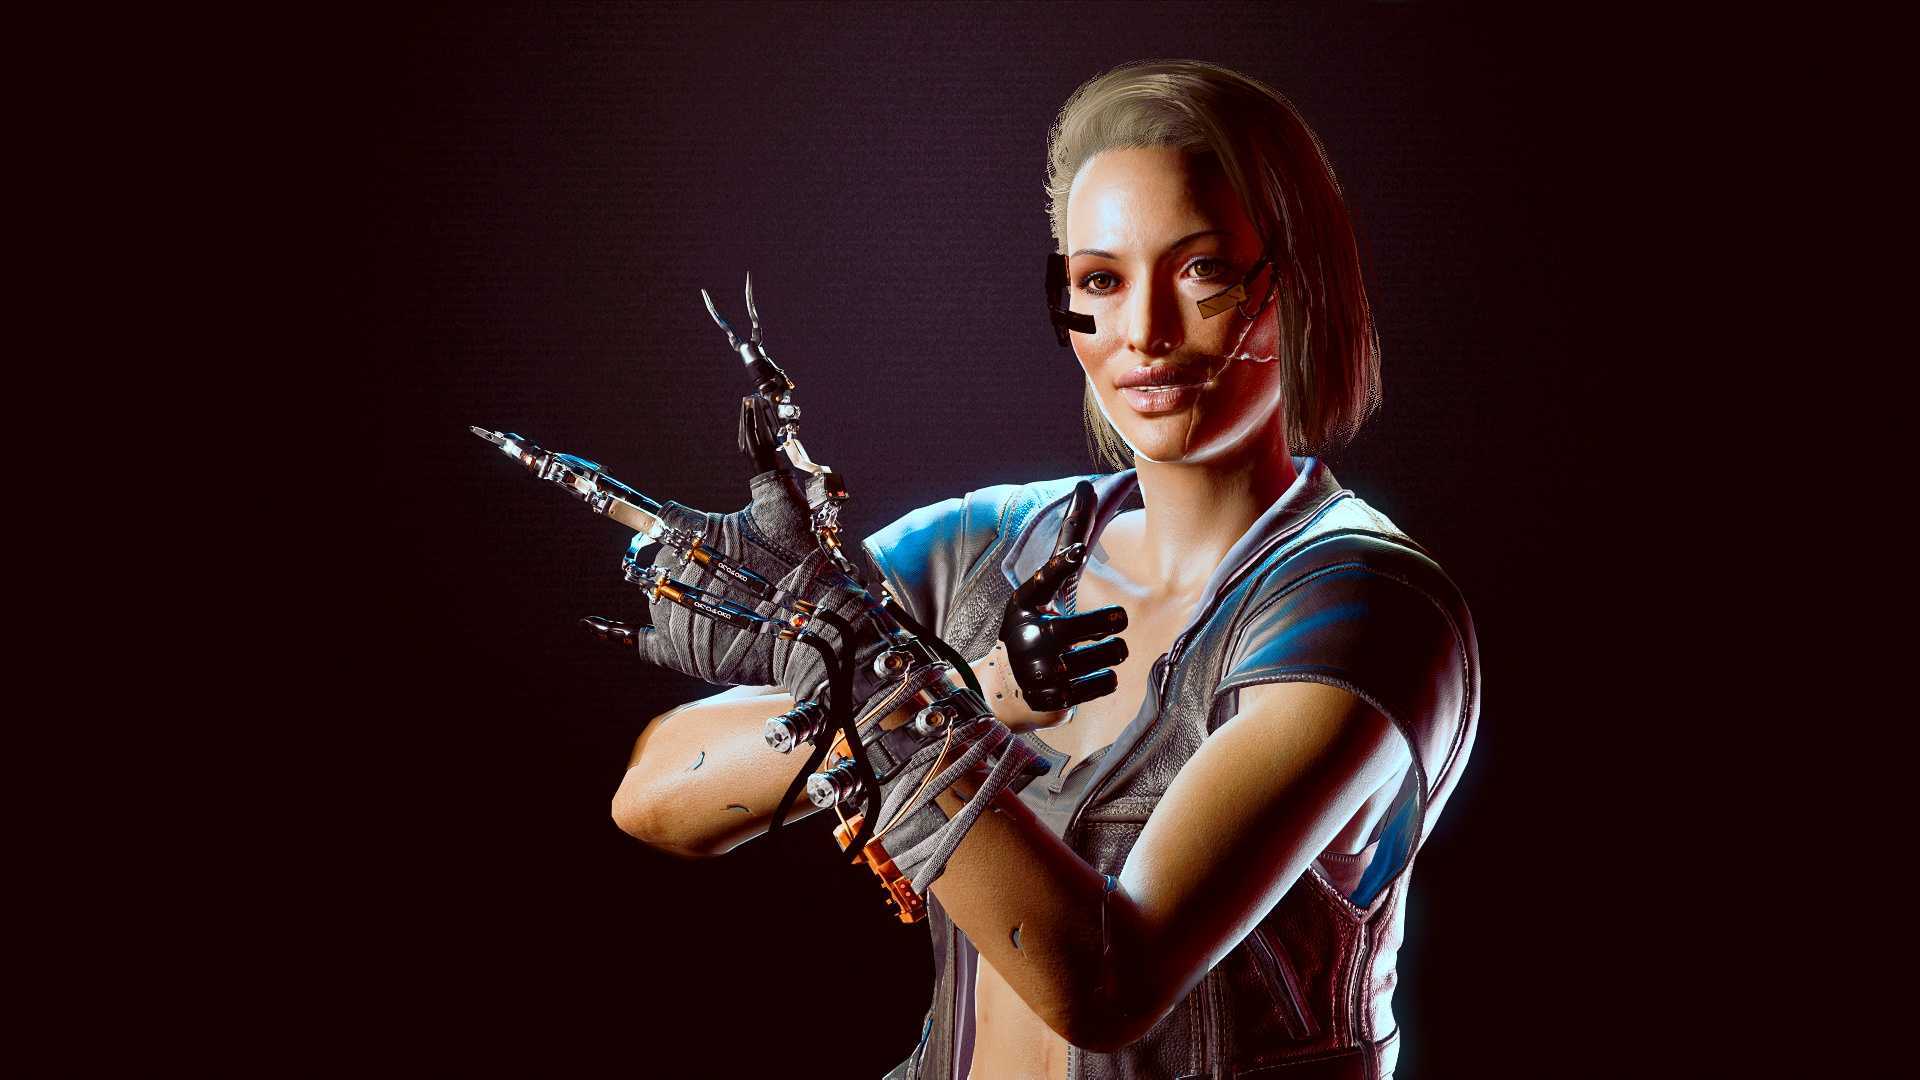 «идеальная cyberpunk 2077». игрок представил «окончательную» версию игры от моддеров